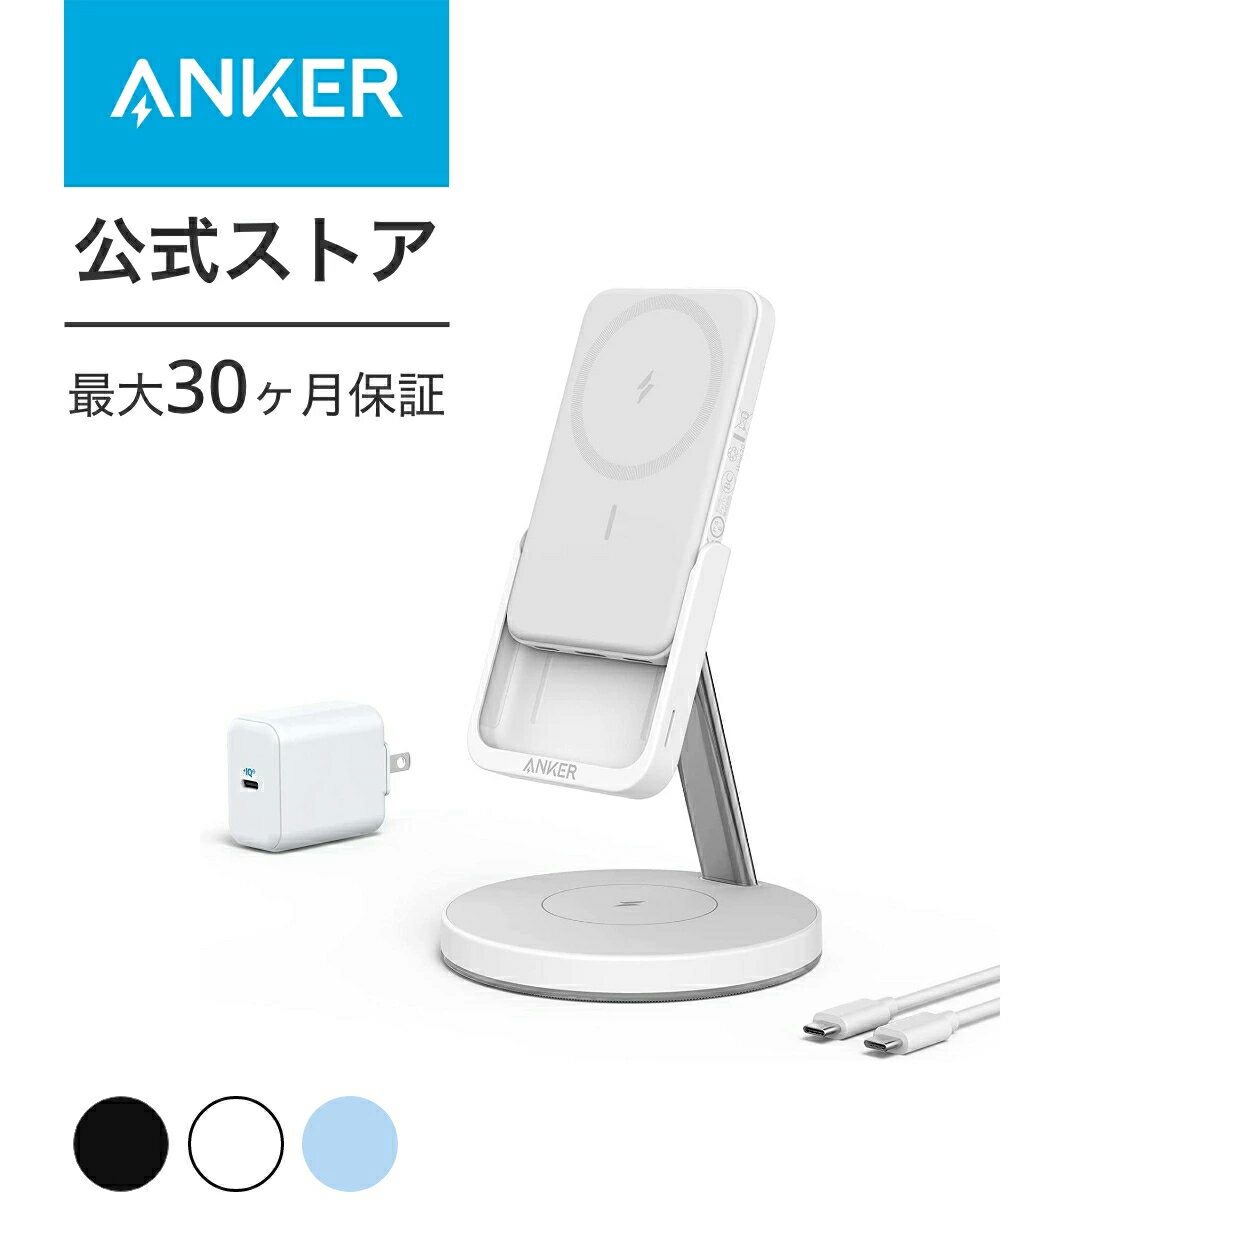 【3,000円OFF 6/11まで】Anker 633 Magnetic Wireless Charger (MagGo)(マグネット式 2-in-1 ワイヤレス充電ステーション)【モバイルバッテリー機能搭載 / 5000mAh / USB急速充電器付属 / マグネット式 / ワイヤレス出力 (7.5W) / PSE】